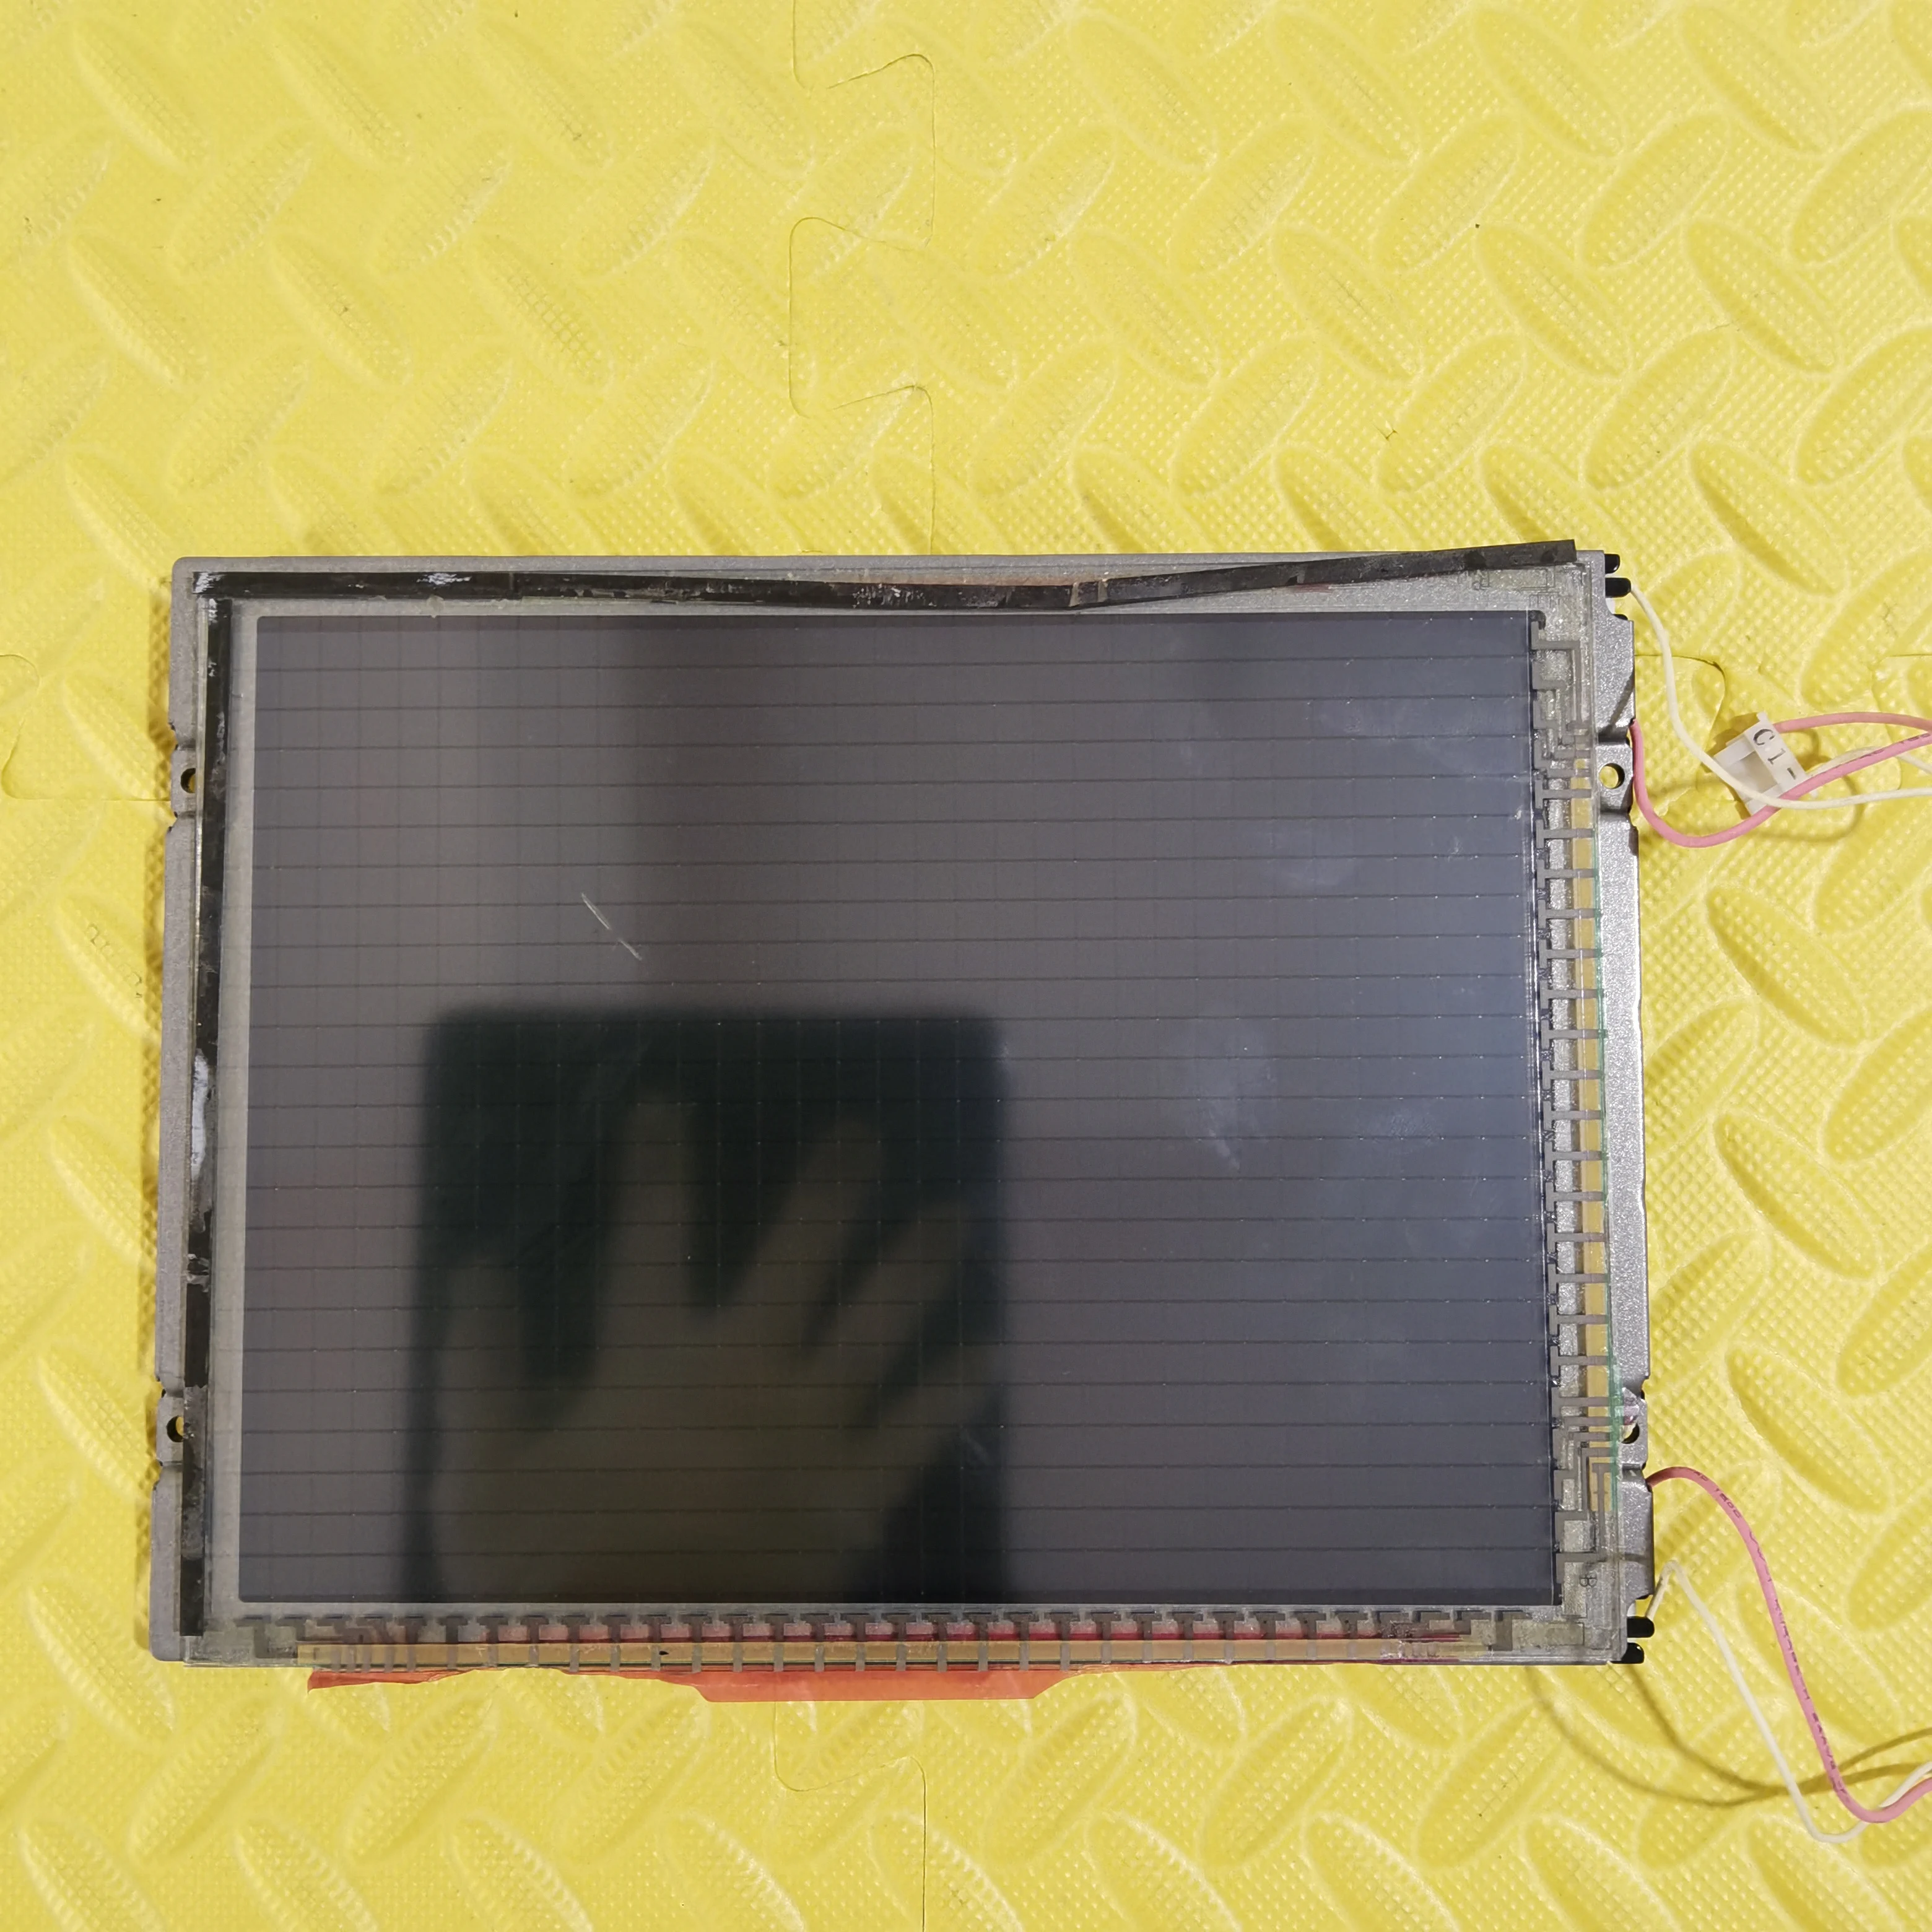 

AA084VC05 LCD Screen Display Panel